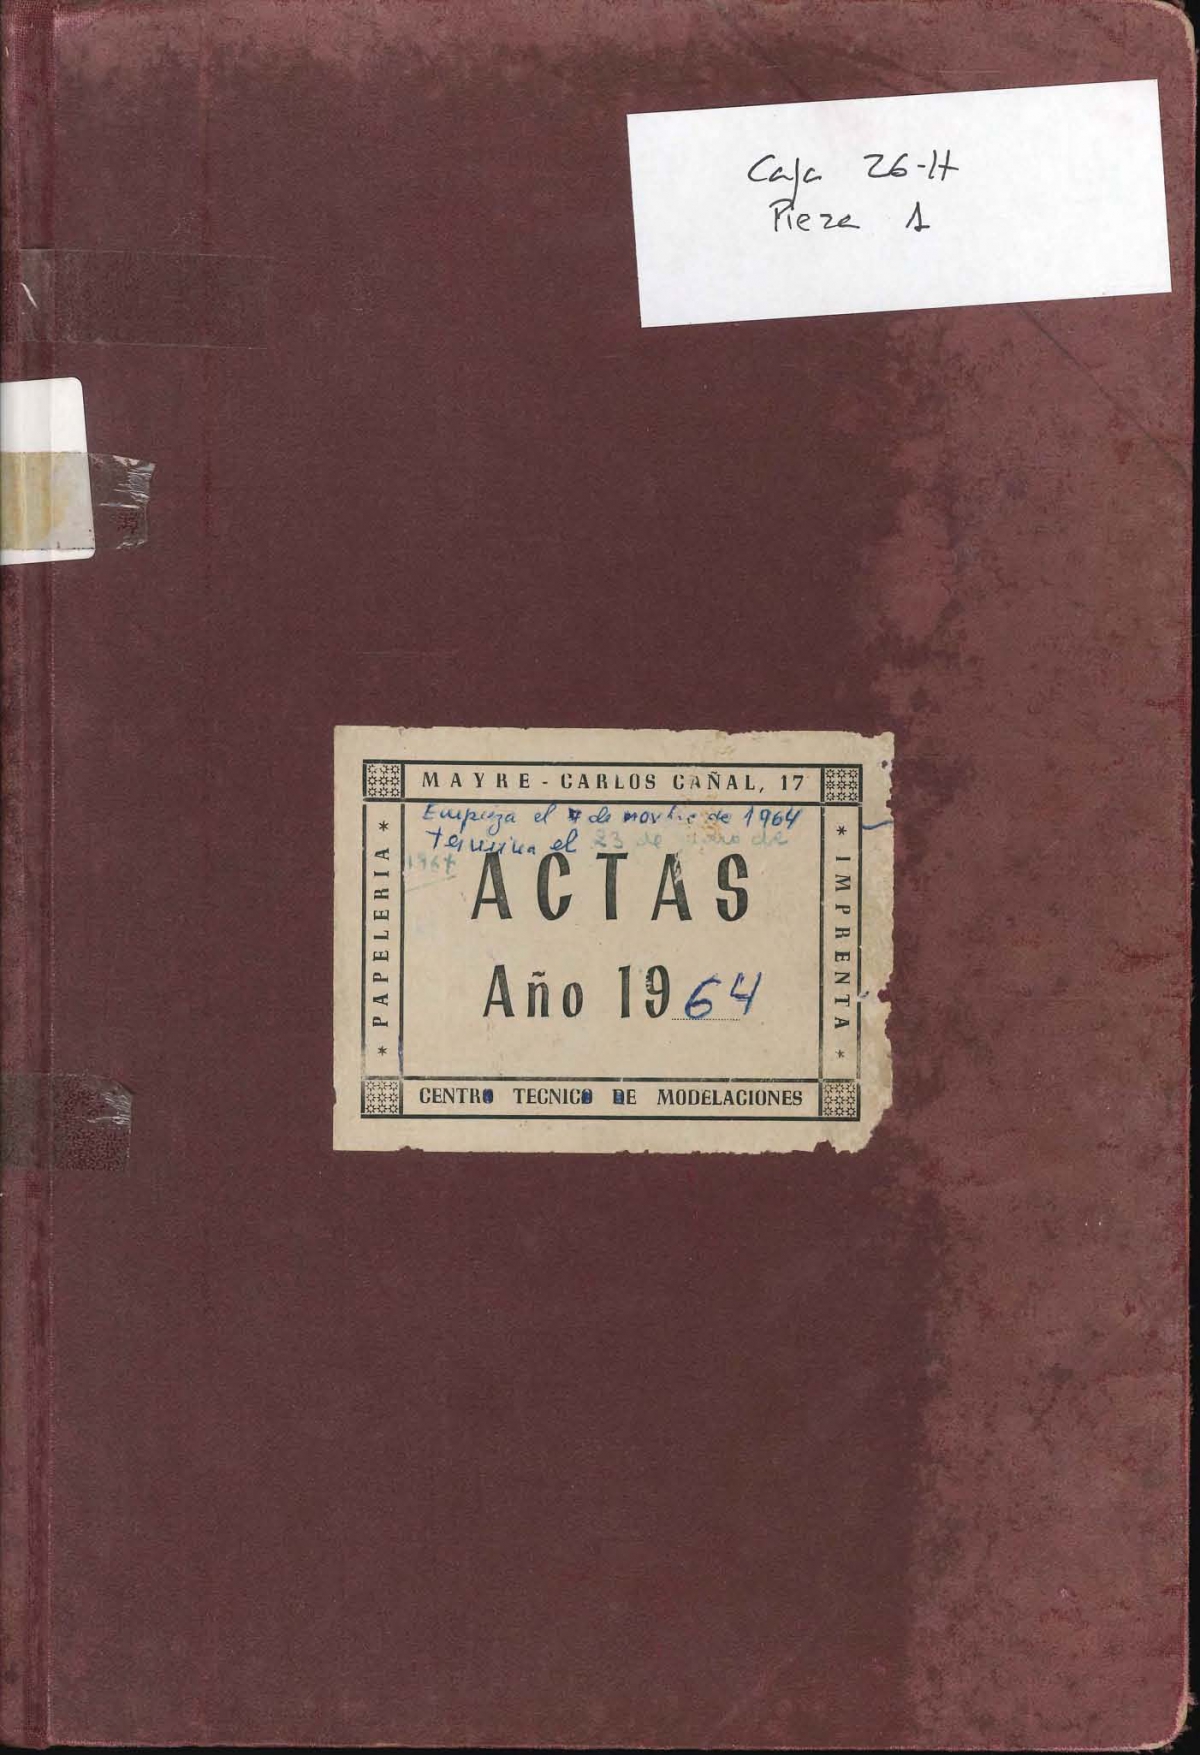 DIGITALIZADAS LIBRO DE ACTAS DE PLENO ENTRE 1964 Y 1970